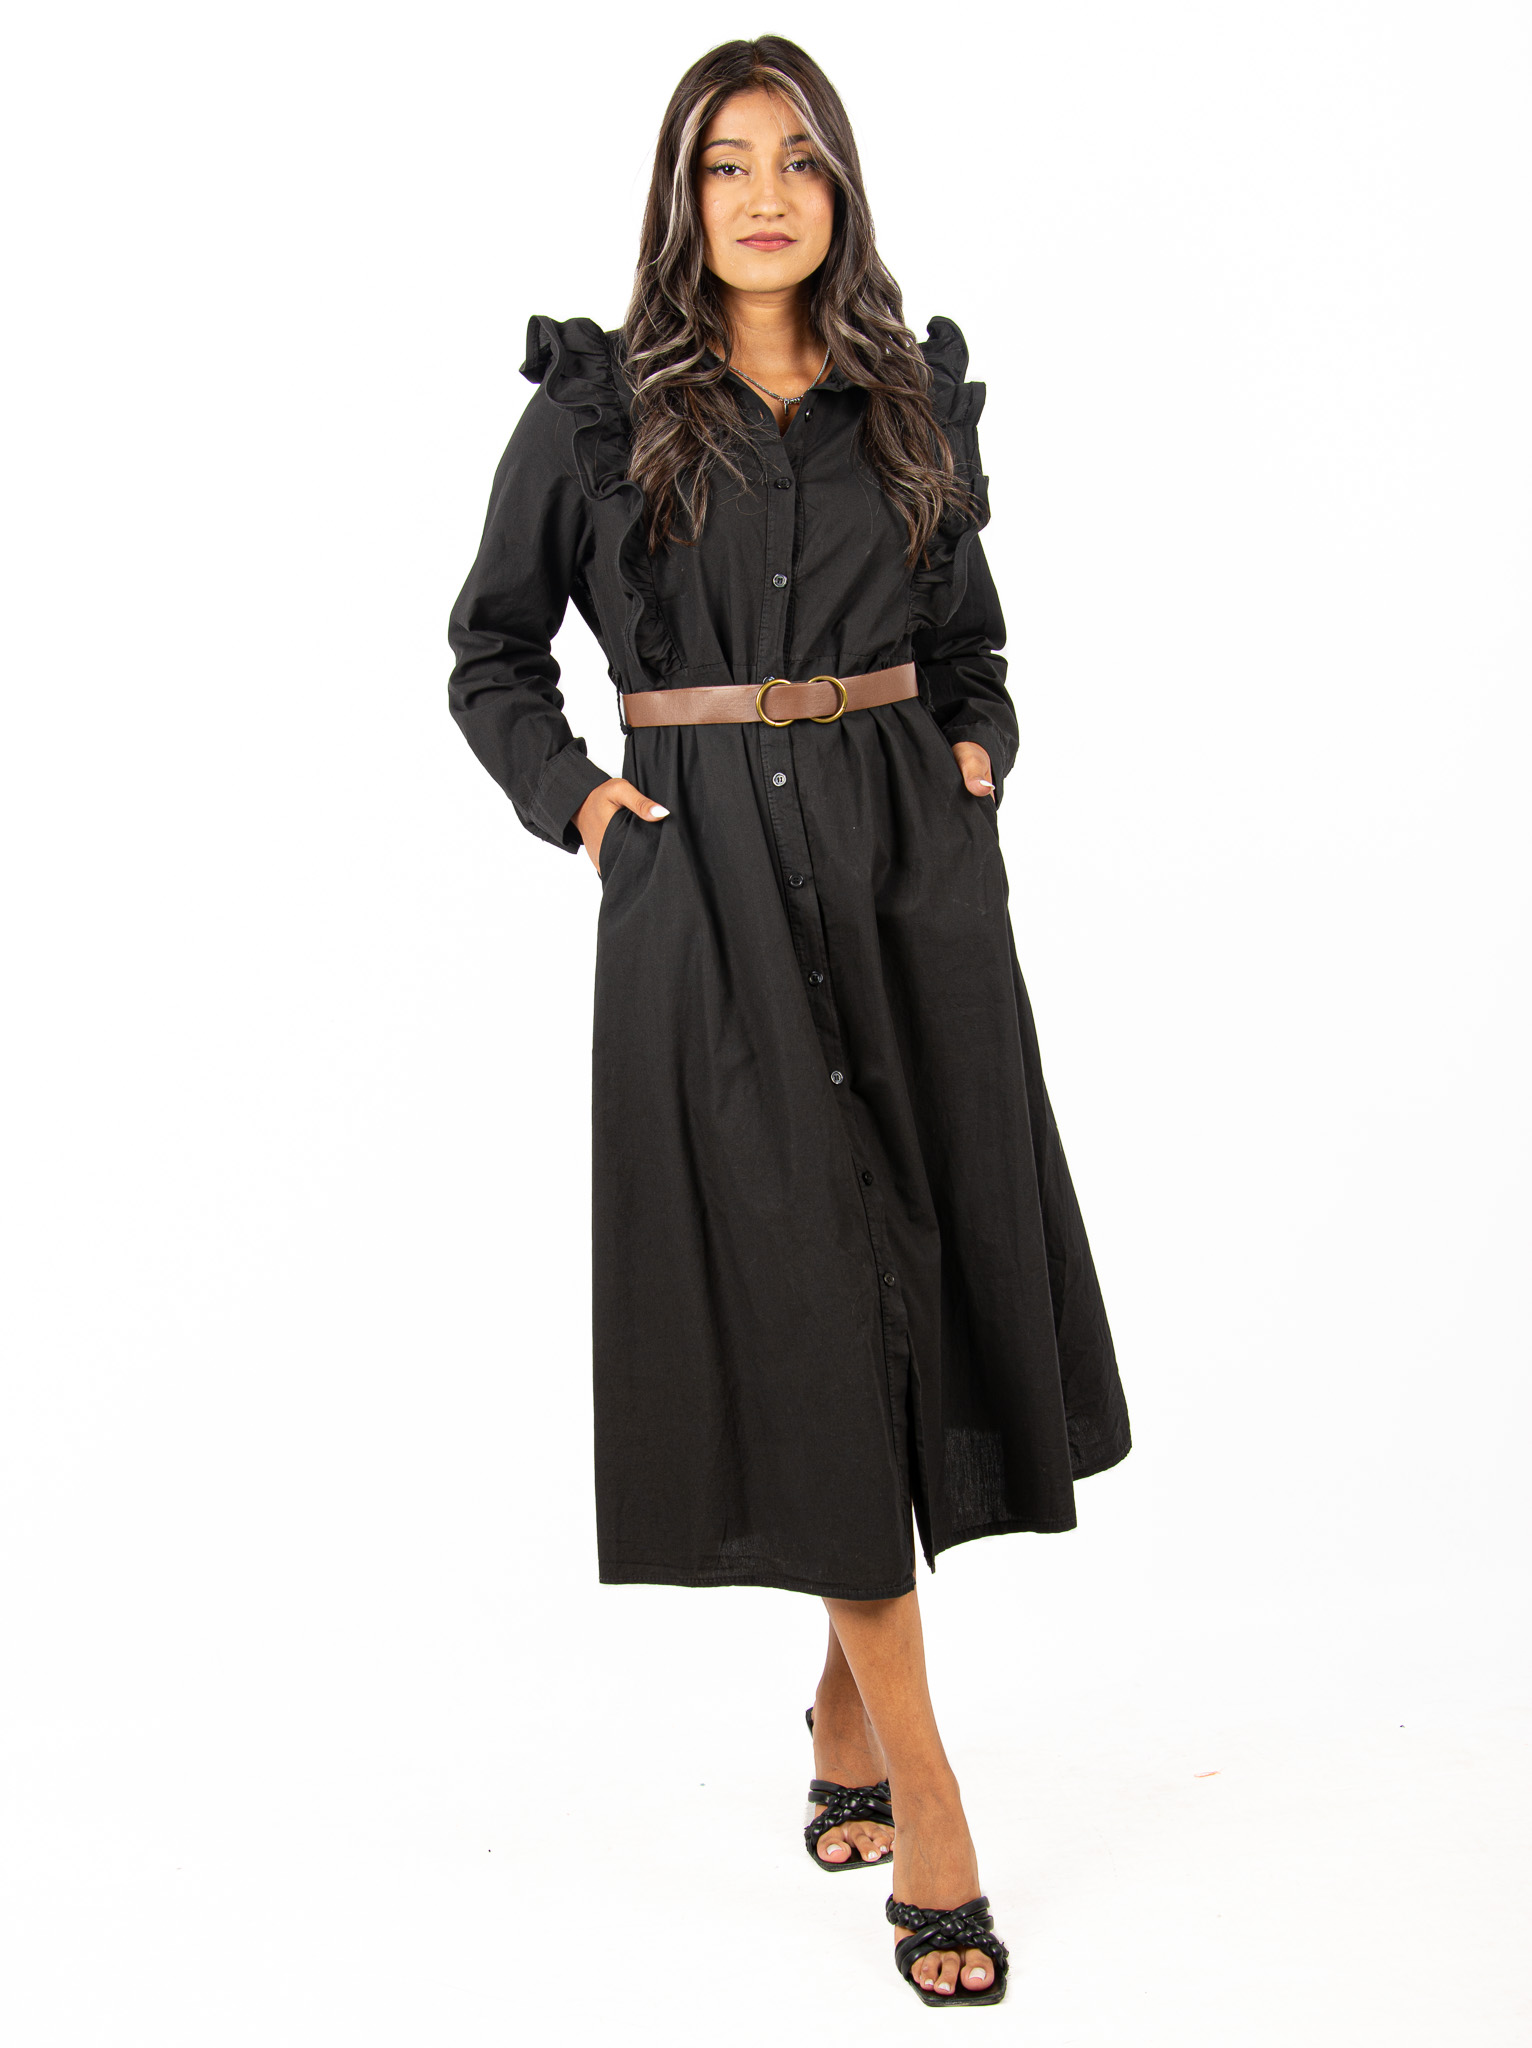 Φόρεμα Σεμιζιέ με Βολάν και Ζώνη Μαύρο | EllenBoutique